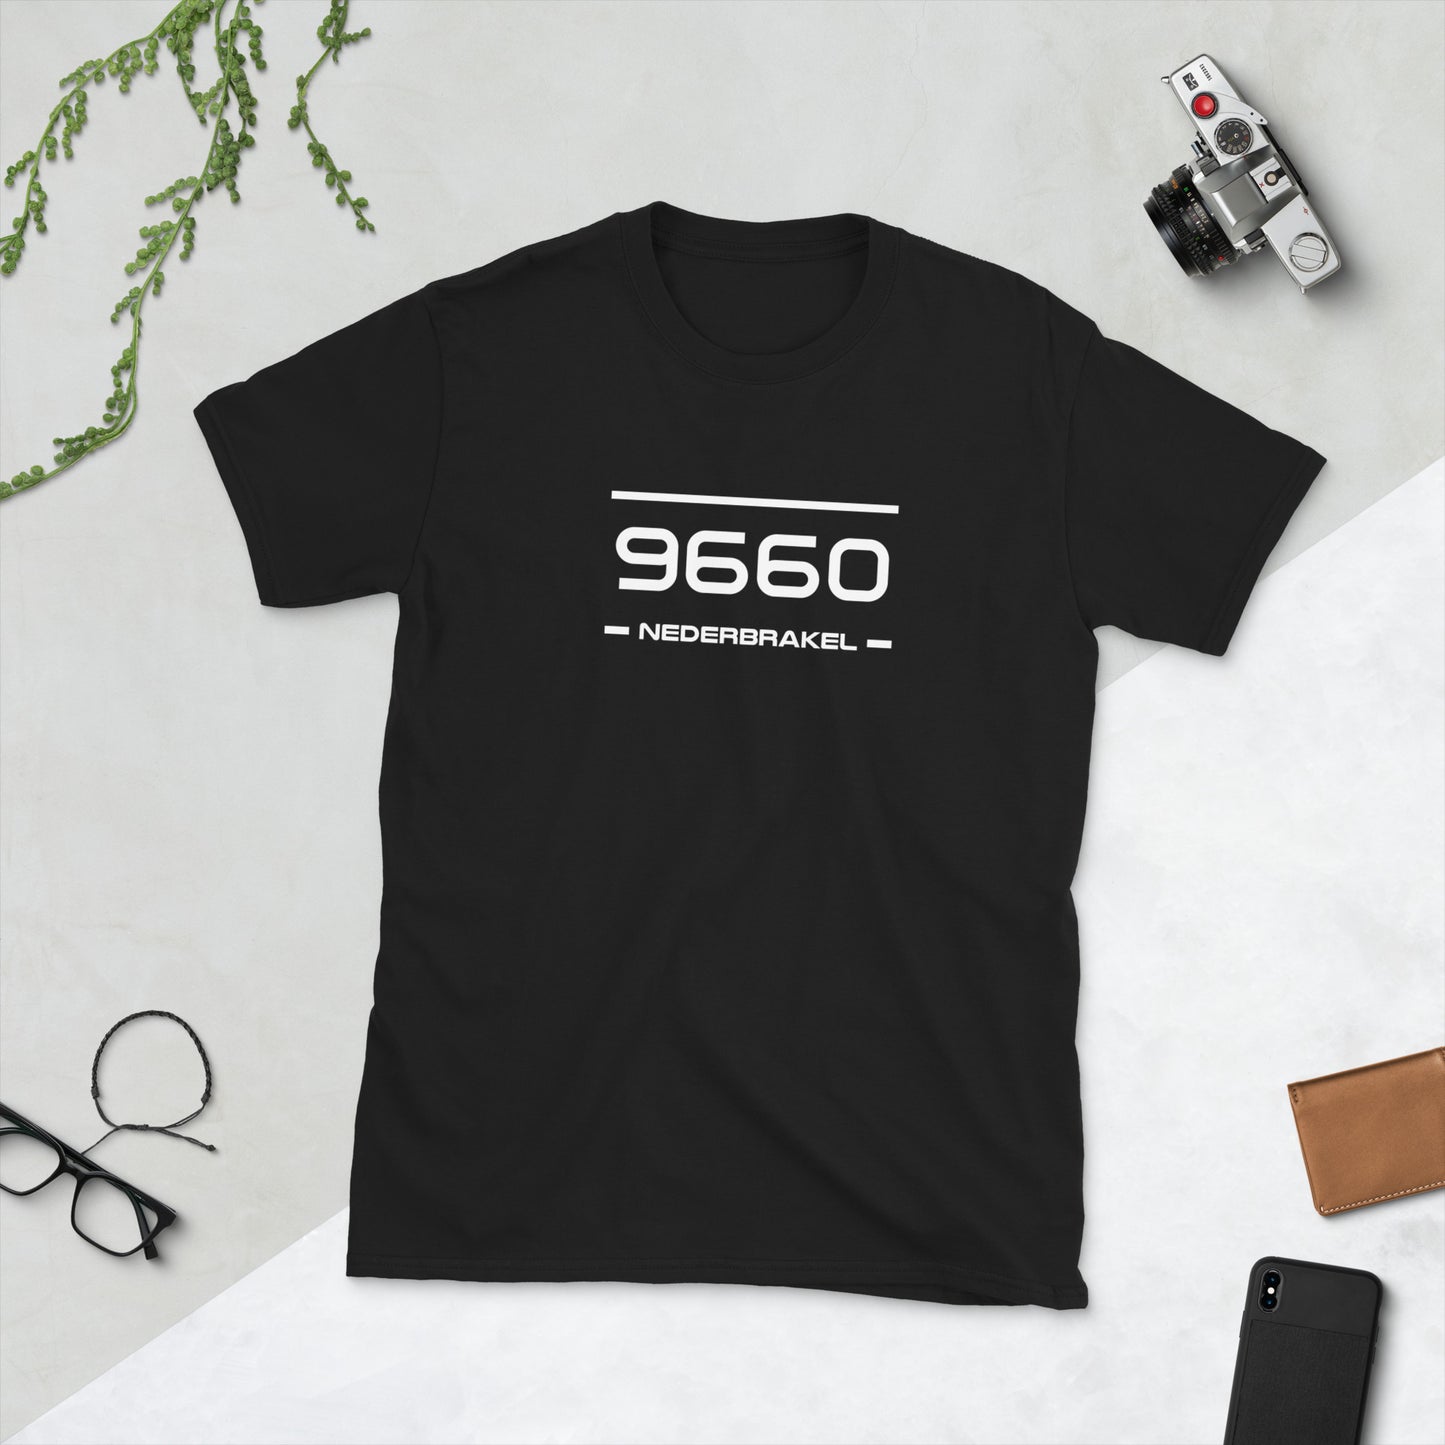 T-Shirt - 9660 - Nederbrakel